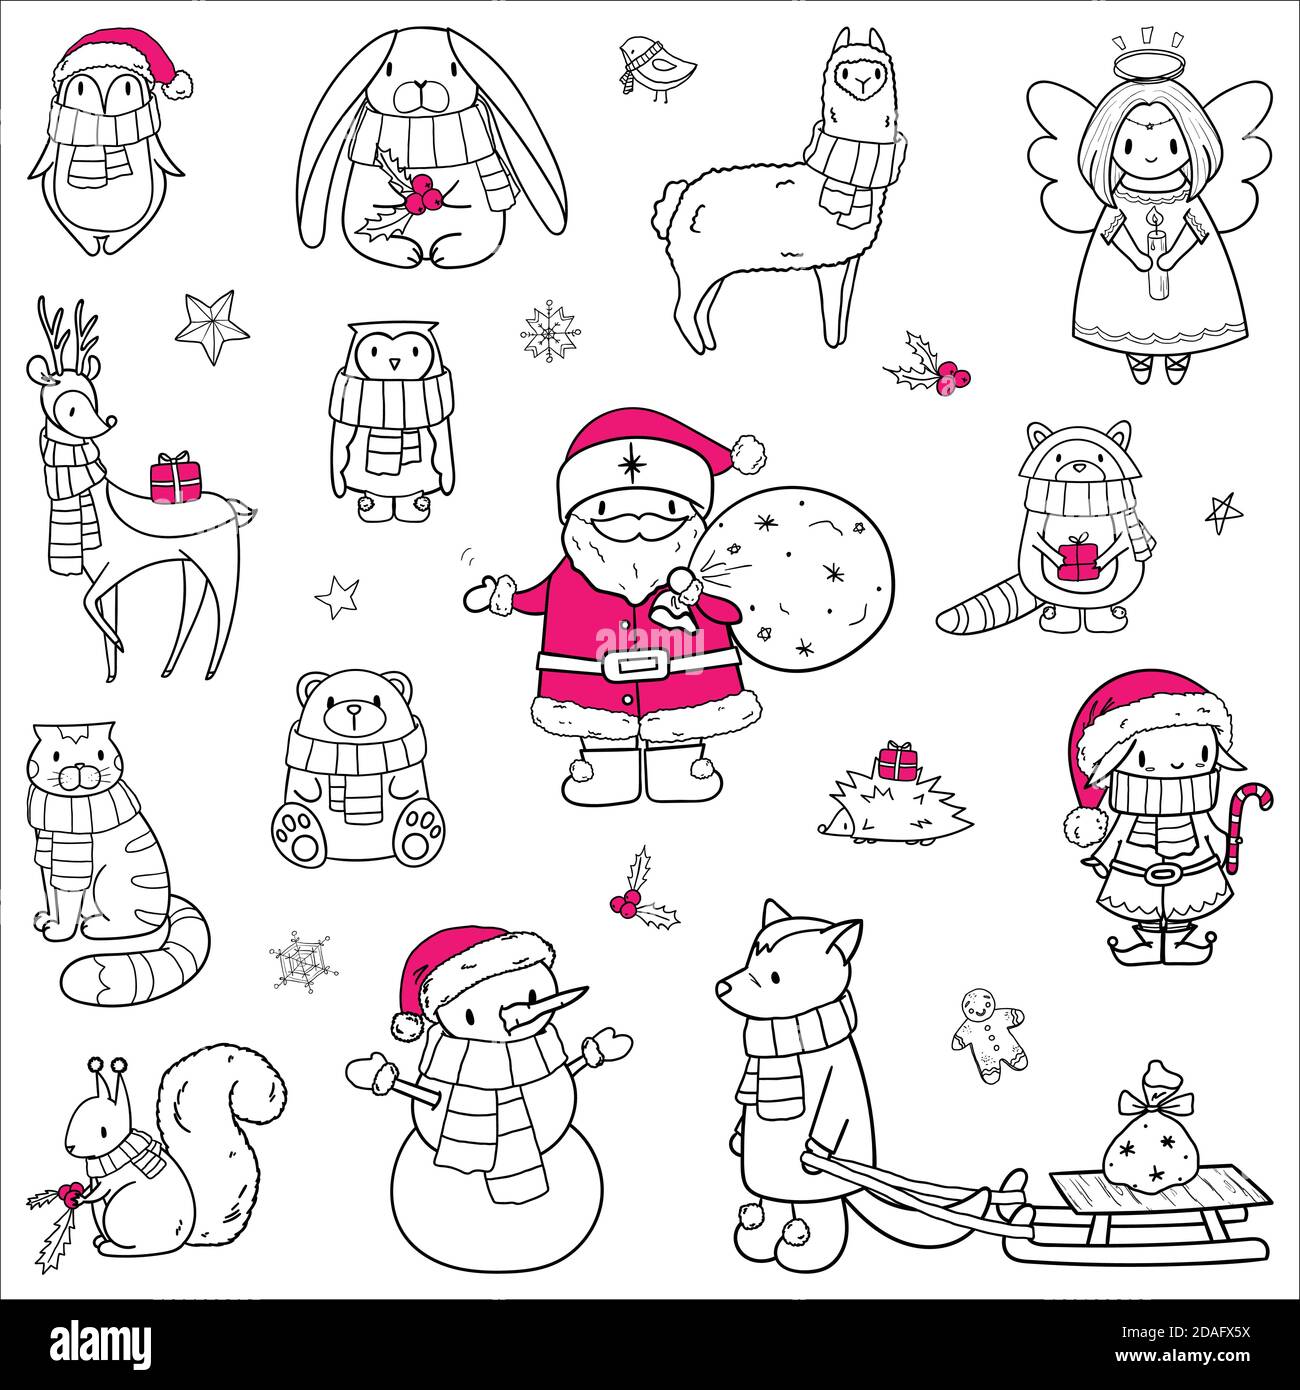 Weihnachten Tiere und Zeichen gesetzt. Handgezeichnete Doodle Outline Vektorgrafik. Santa, Elf, Schneemann, Engel, Katze, Waschbär, Bär, Eichhörnchen, Hase Stock Vektor